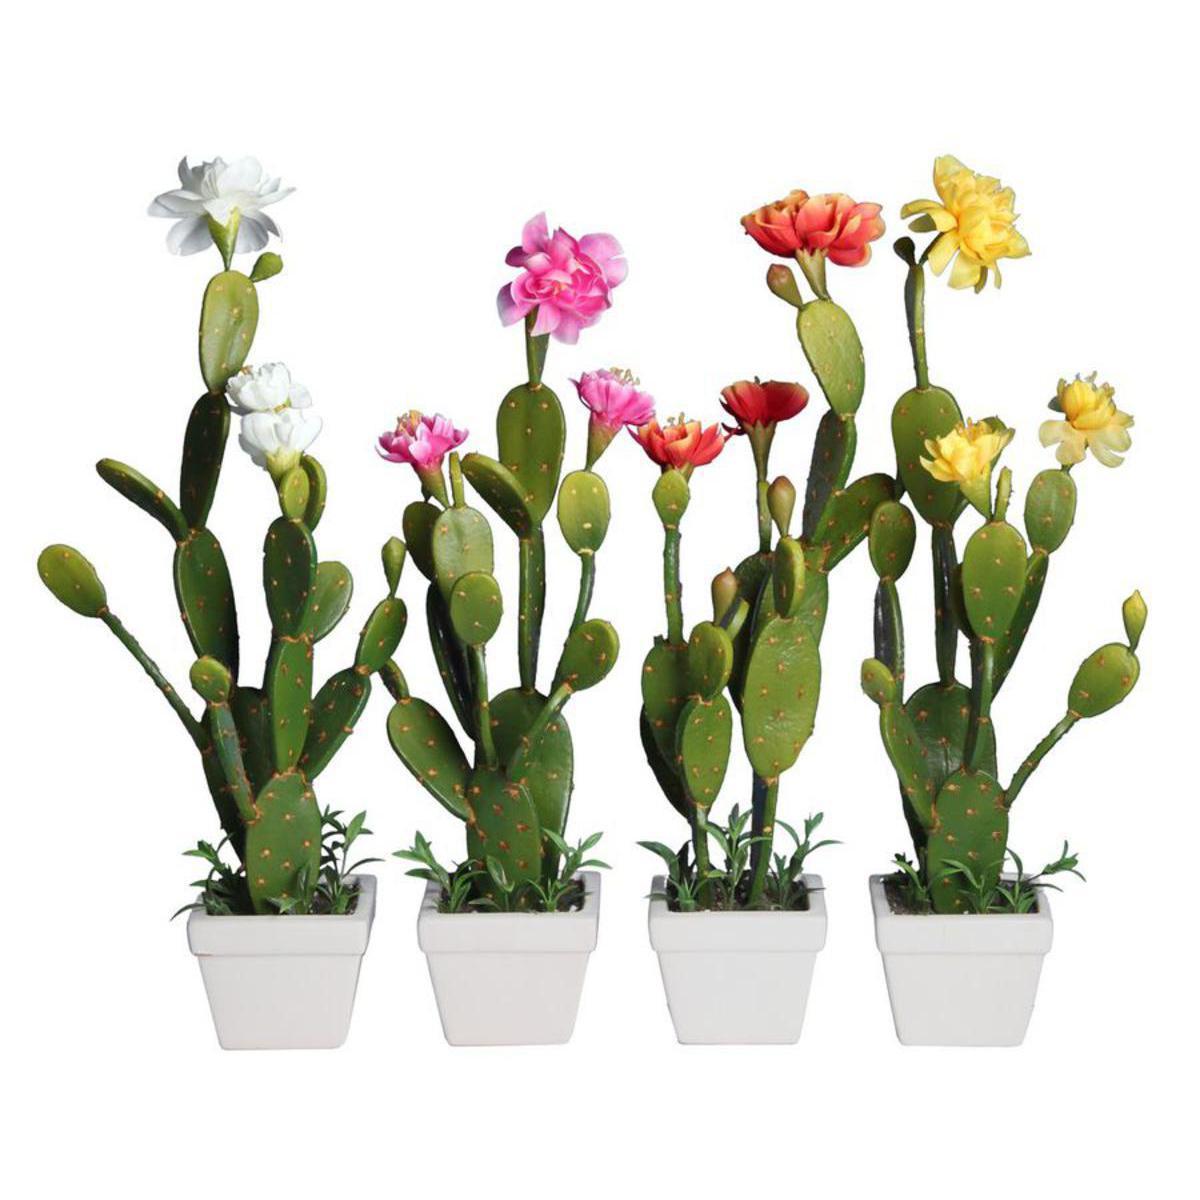 Cactus avec fleurs en pot céramique - Plastique - H 46 cm - Vert